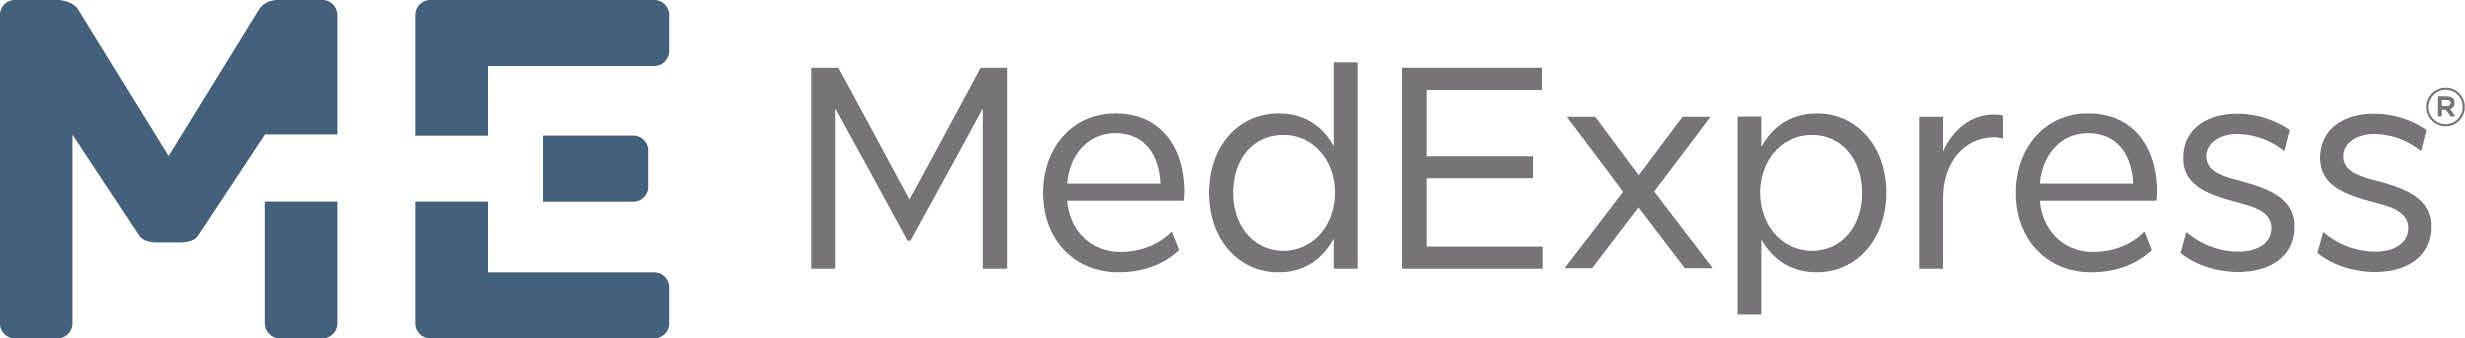 MedExpress Logo - MedExpress Urgent Care Profile at PracticeLink